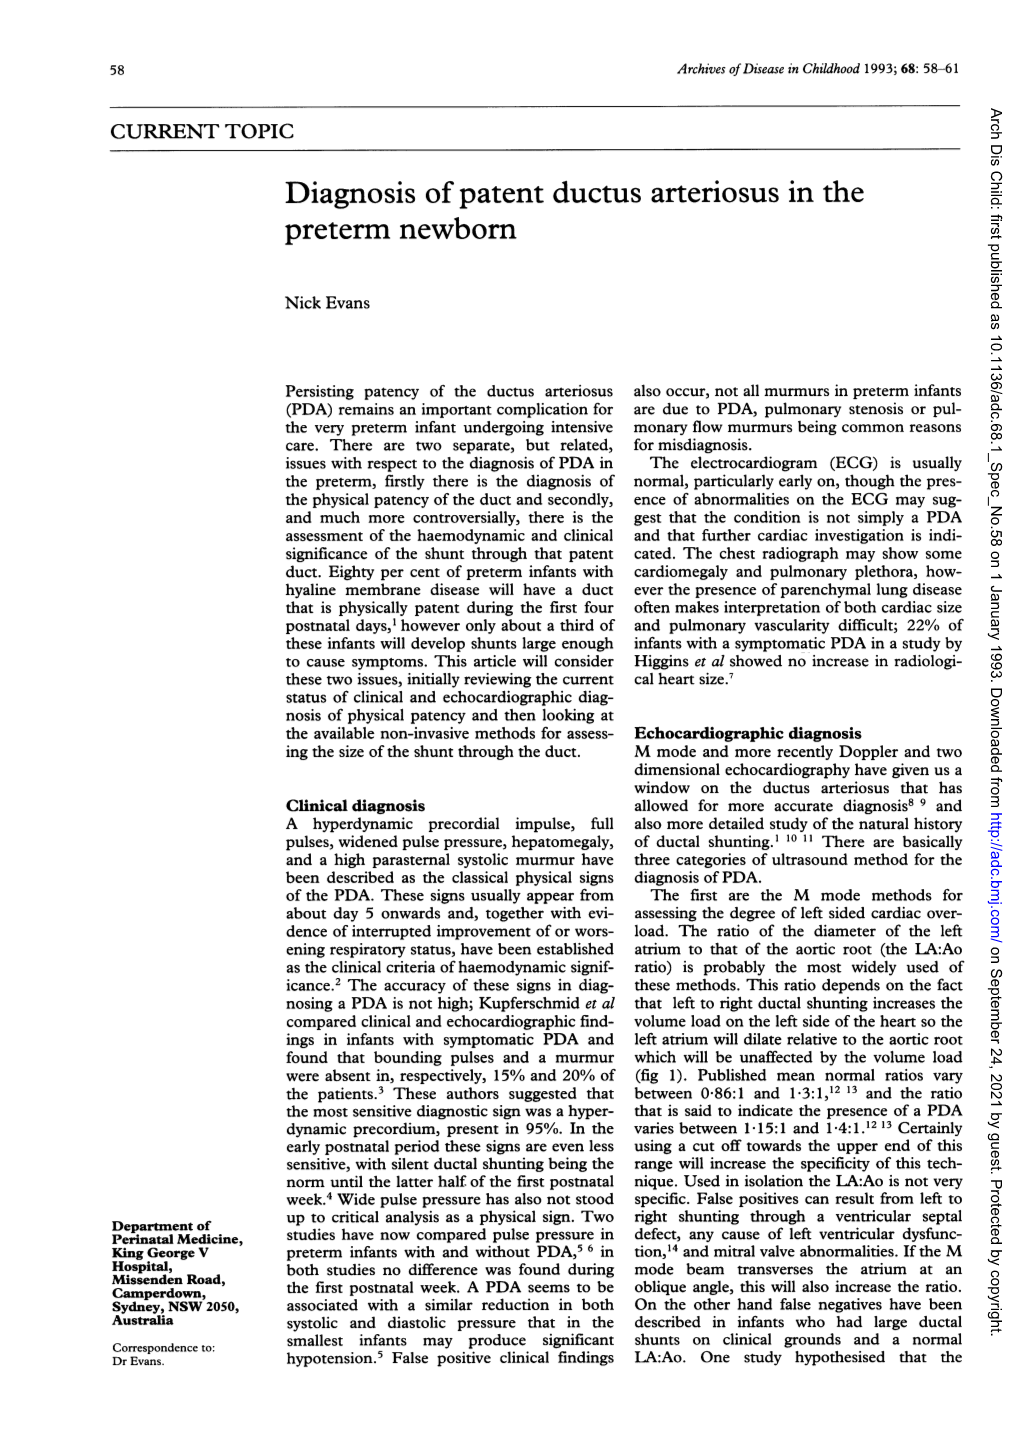 Diagnosis of Patent Ductus Arteriosus in the Preterm Newborn